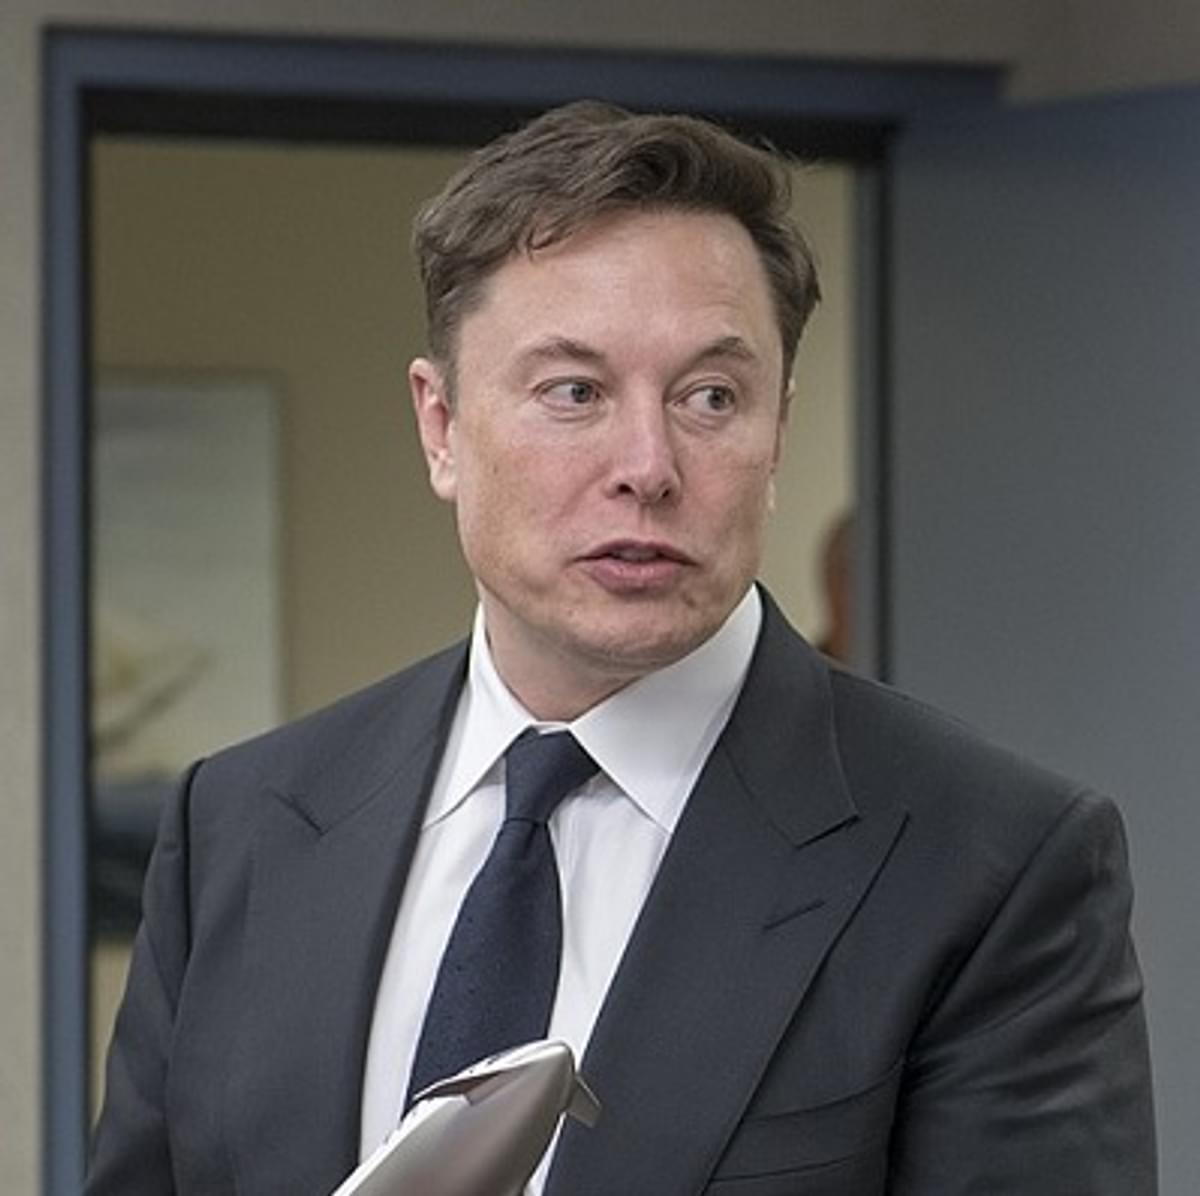 Financiering glazen huis van Elon Musk onderzocht door aanklagers en SEC  image